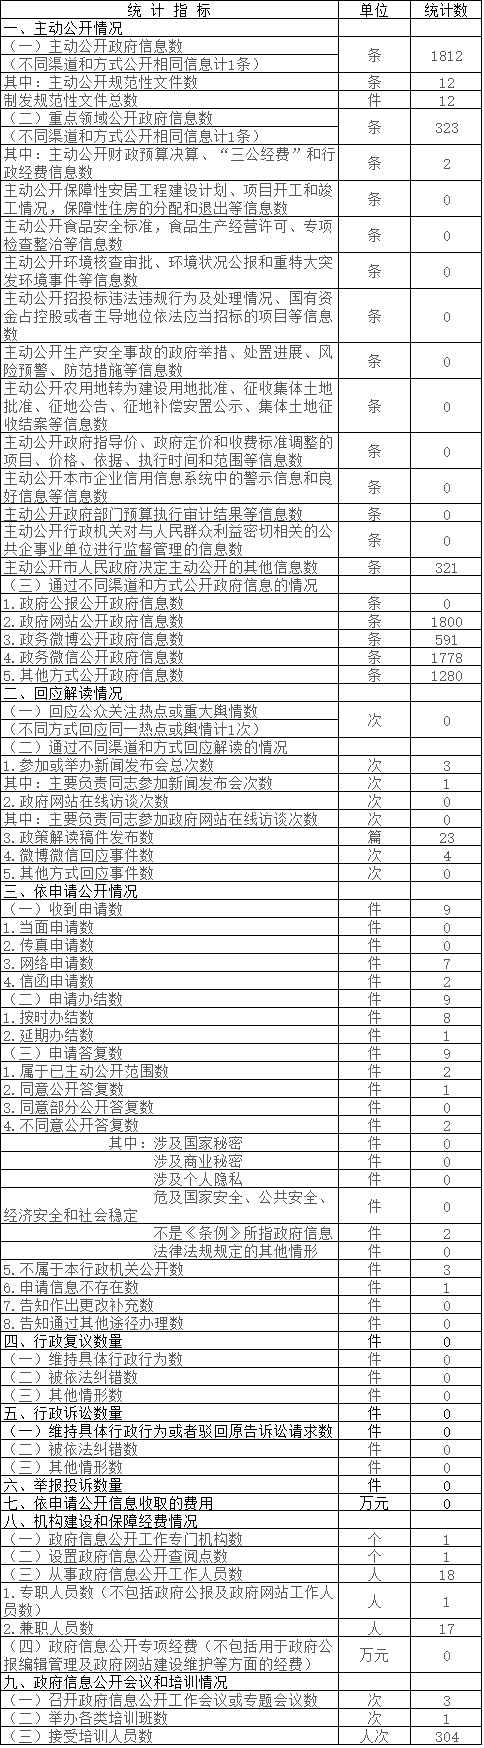 中關村管委會政府信息公開情況統計表(2017年度)